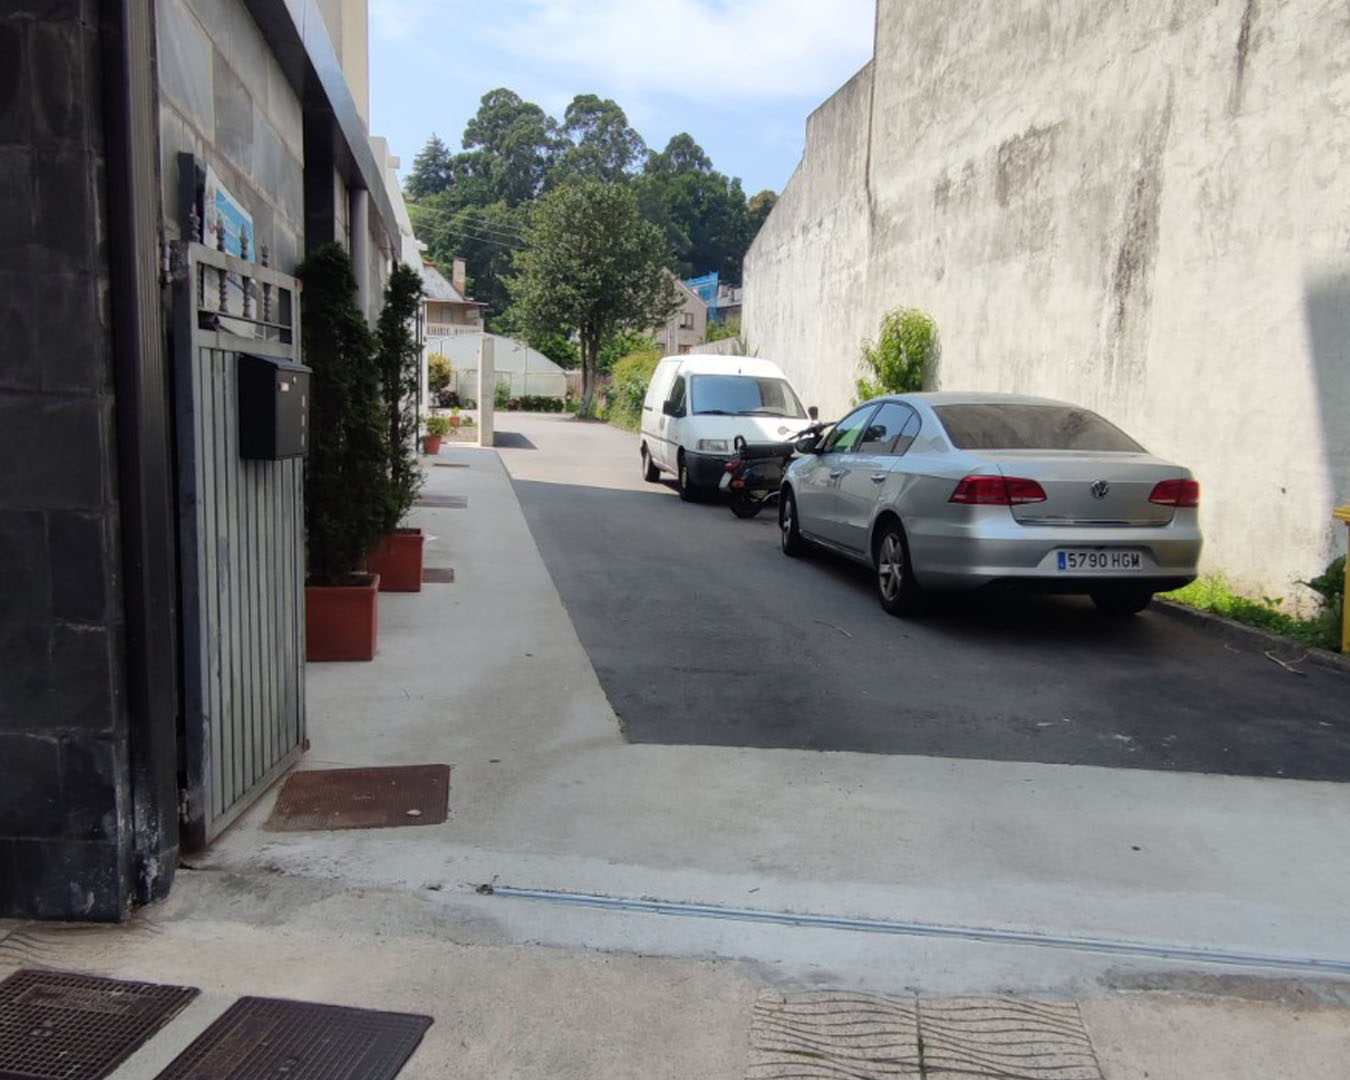 Entrada al parking que pueden utilizar los huéspedes de hotel Prado Viejo